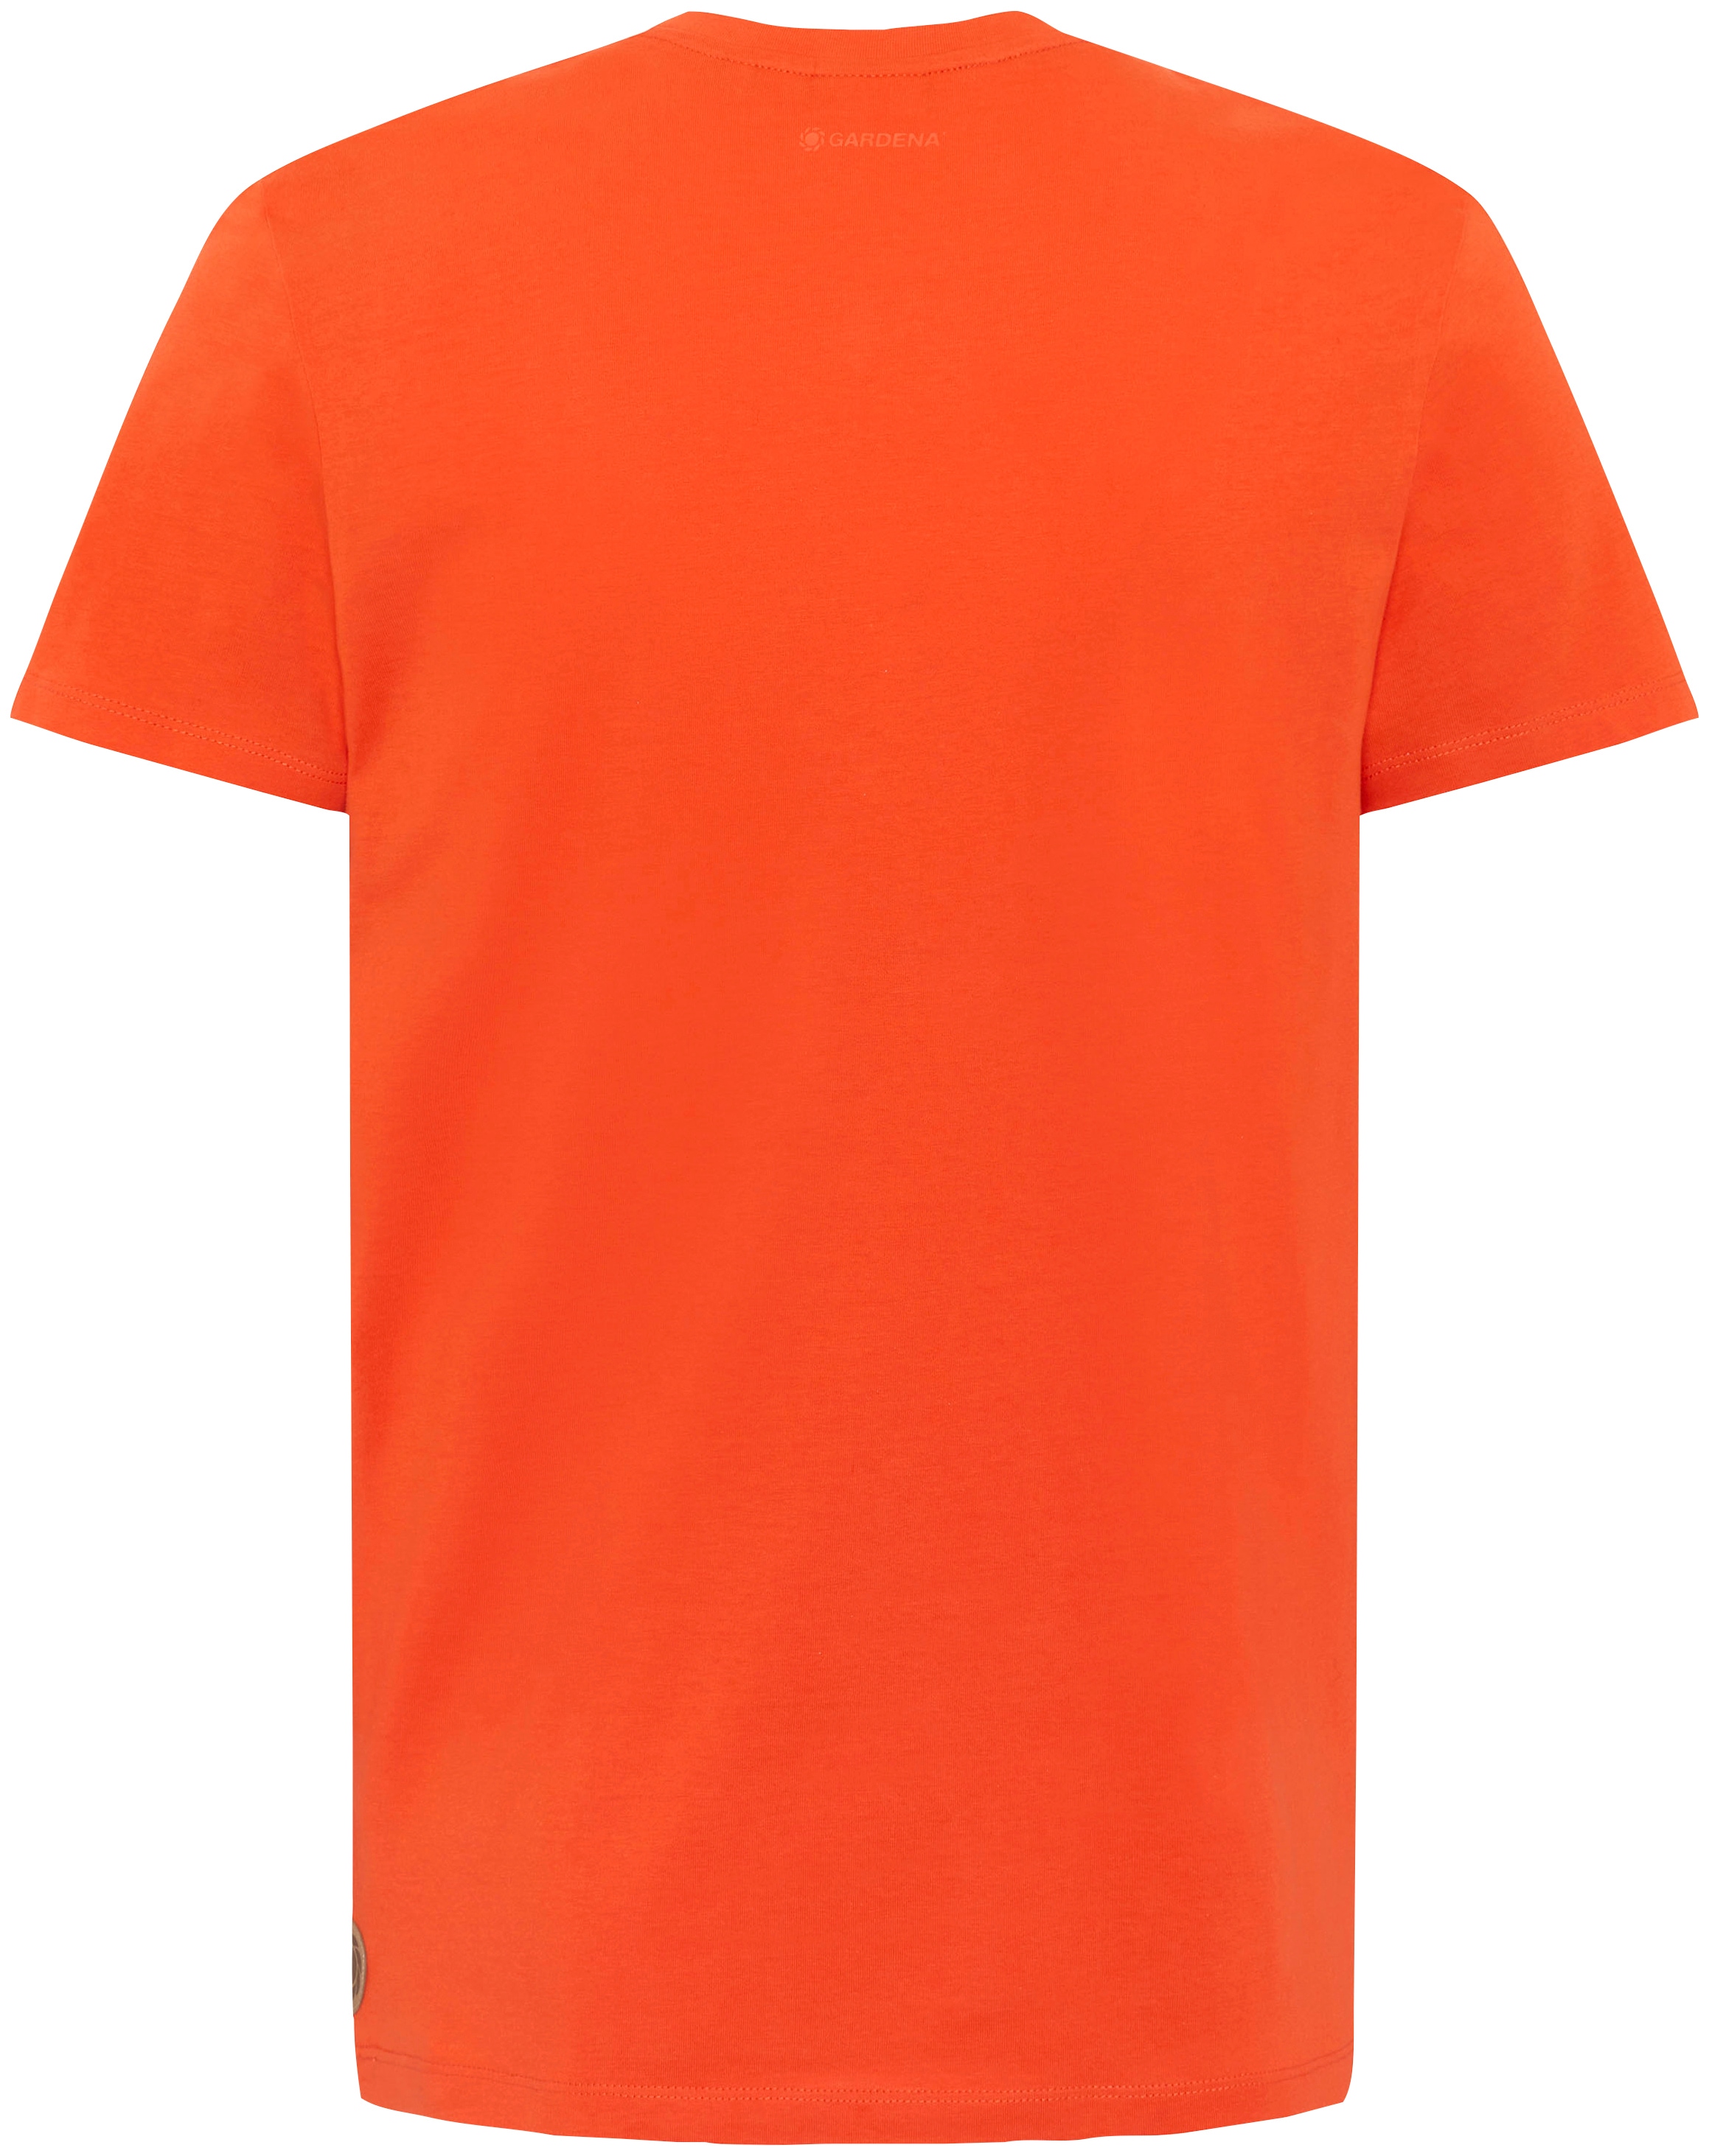 GARDENA T-Shirt »Flame«, mit Gardena-Logodruck Shop im OTTO Online